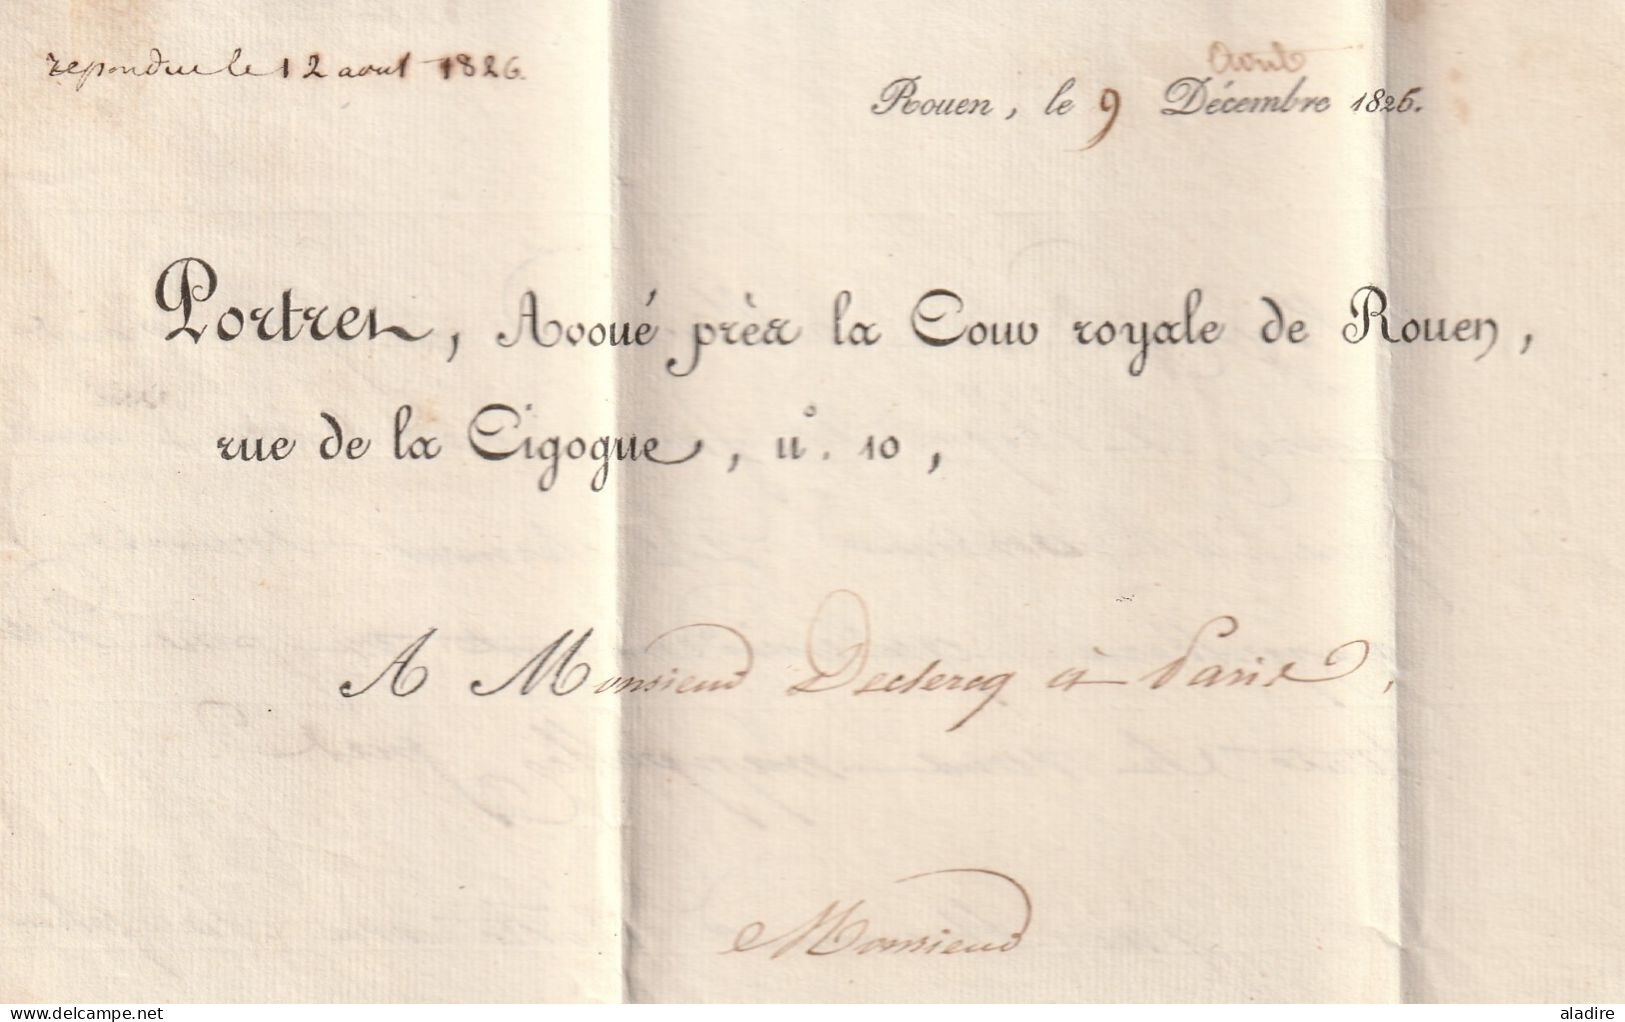 1826 - Marque postale 74 ROUEN sur lettre pliée de 2 pages vers PARIS - taxe 4 - dateur en arrivée